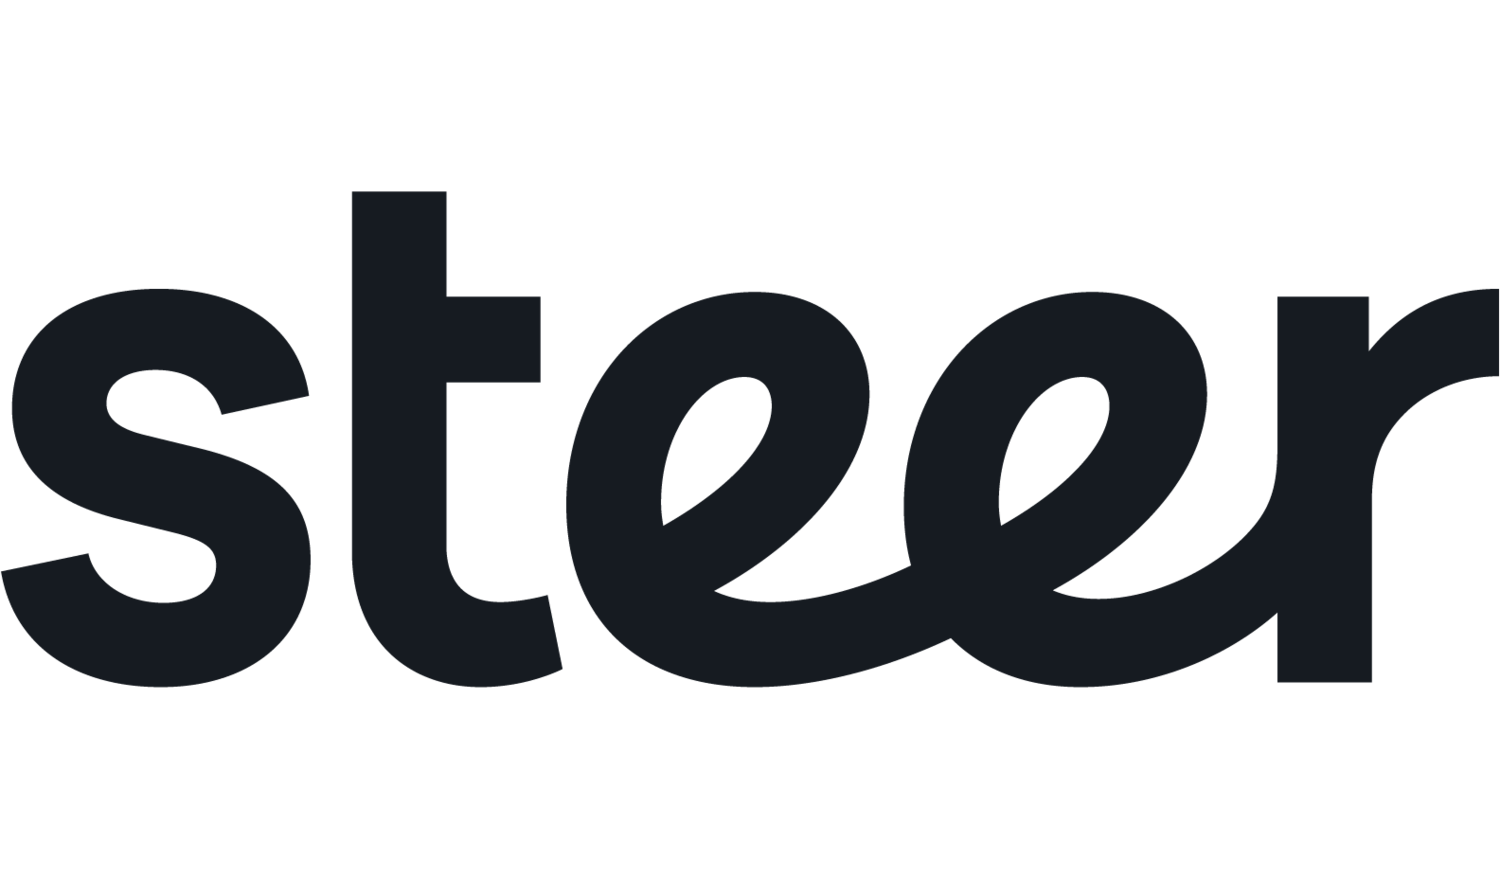 steer_logo.png